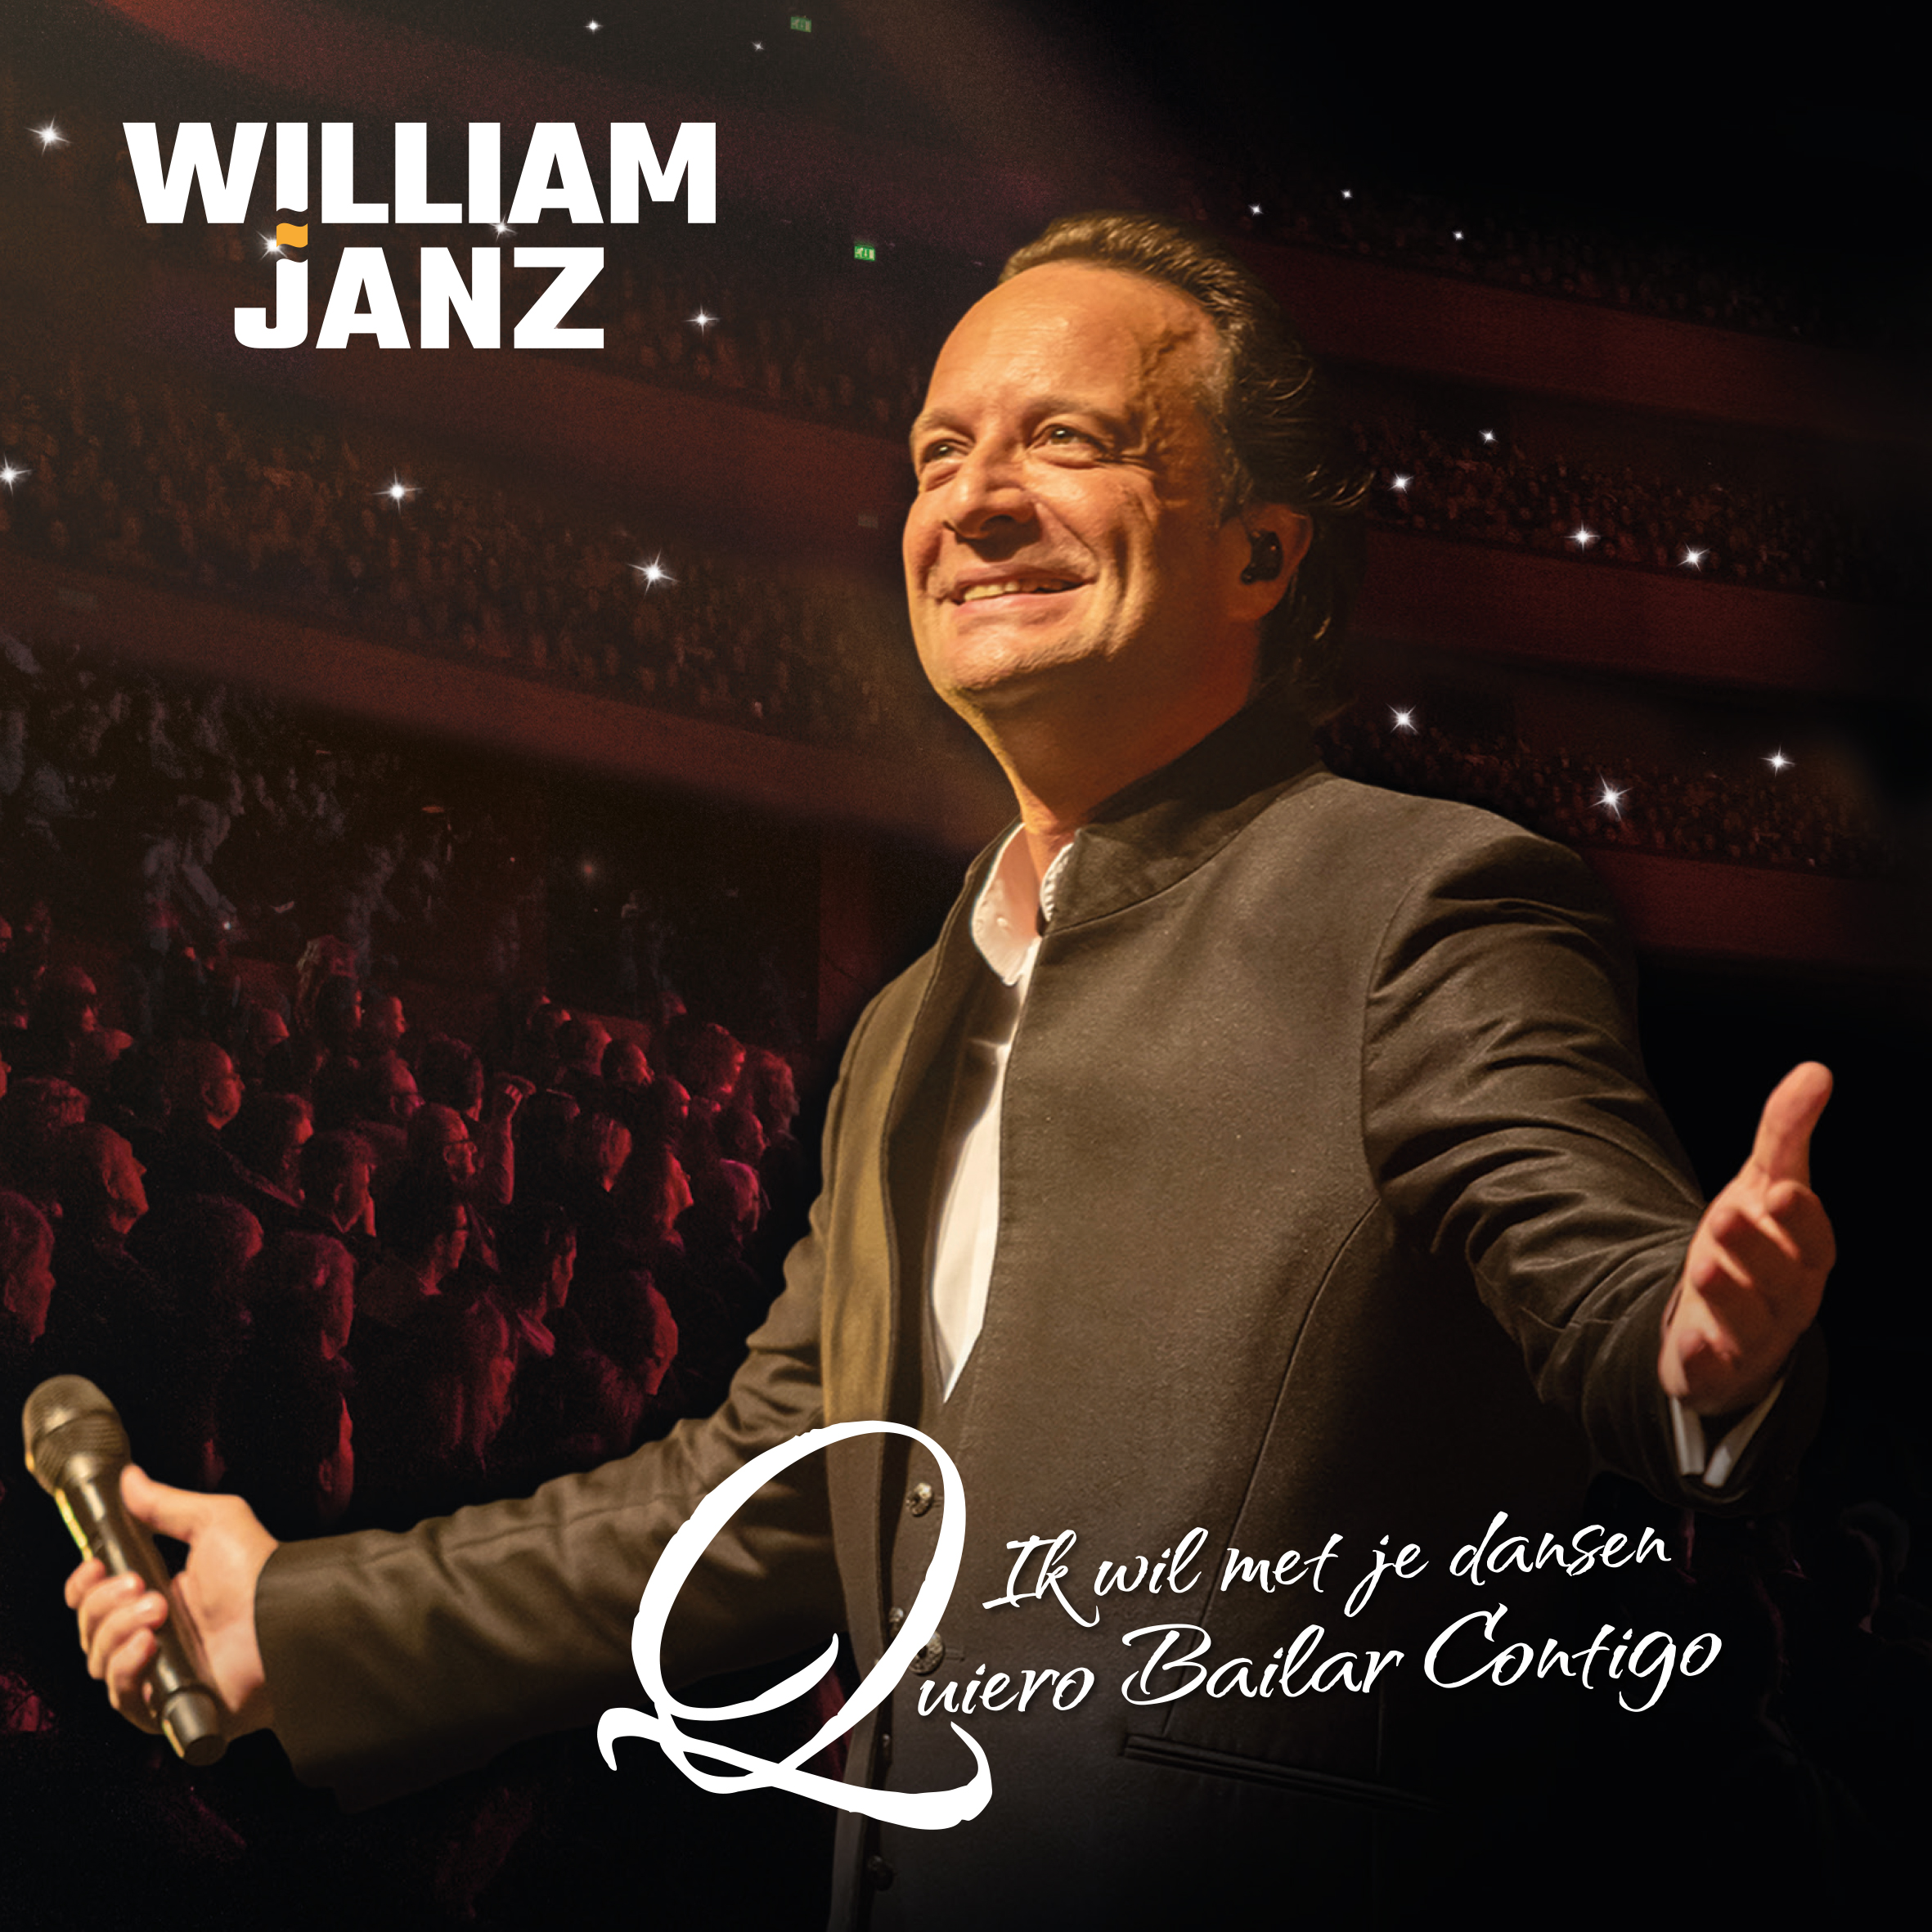 William Janz – Ik wil met je dansen, Quiero bailar contigo – Week 14